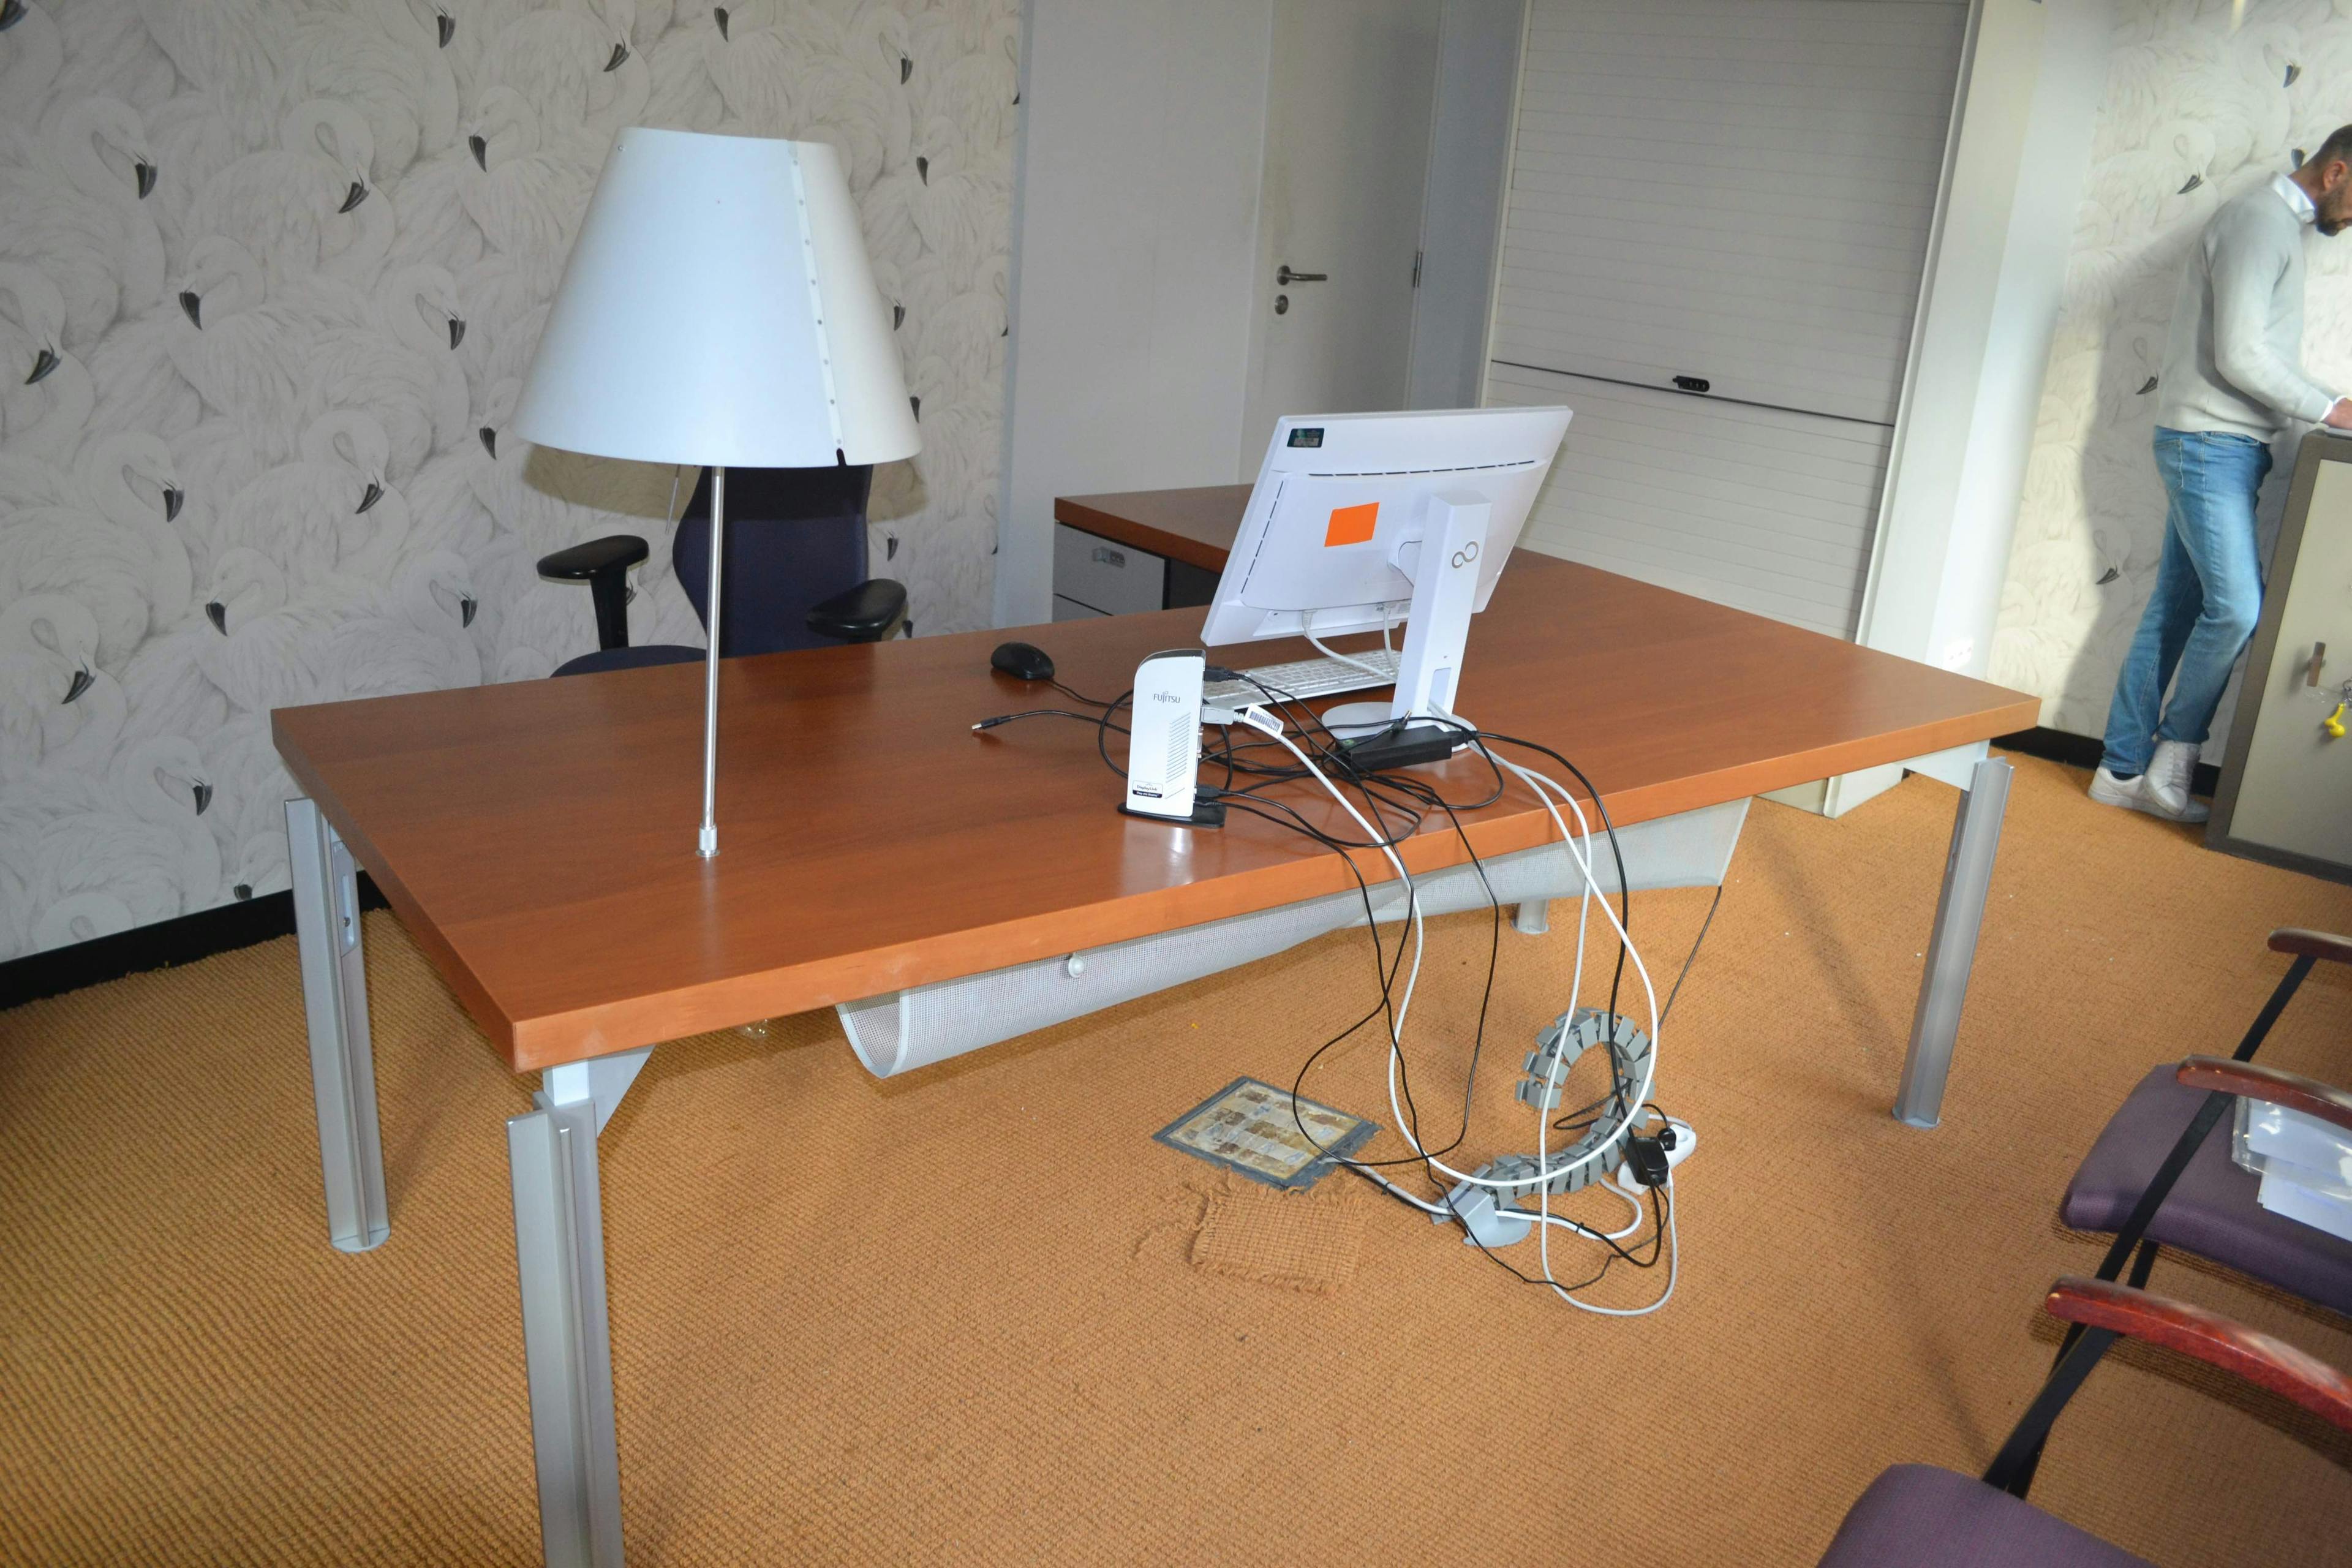 Bureau en L avec lampe / Bureau L Vorm met lamp - Qualité de seconde main "Bureaux" - Relieve Furniture - 1